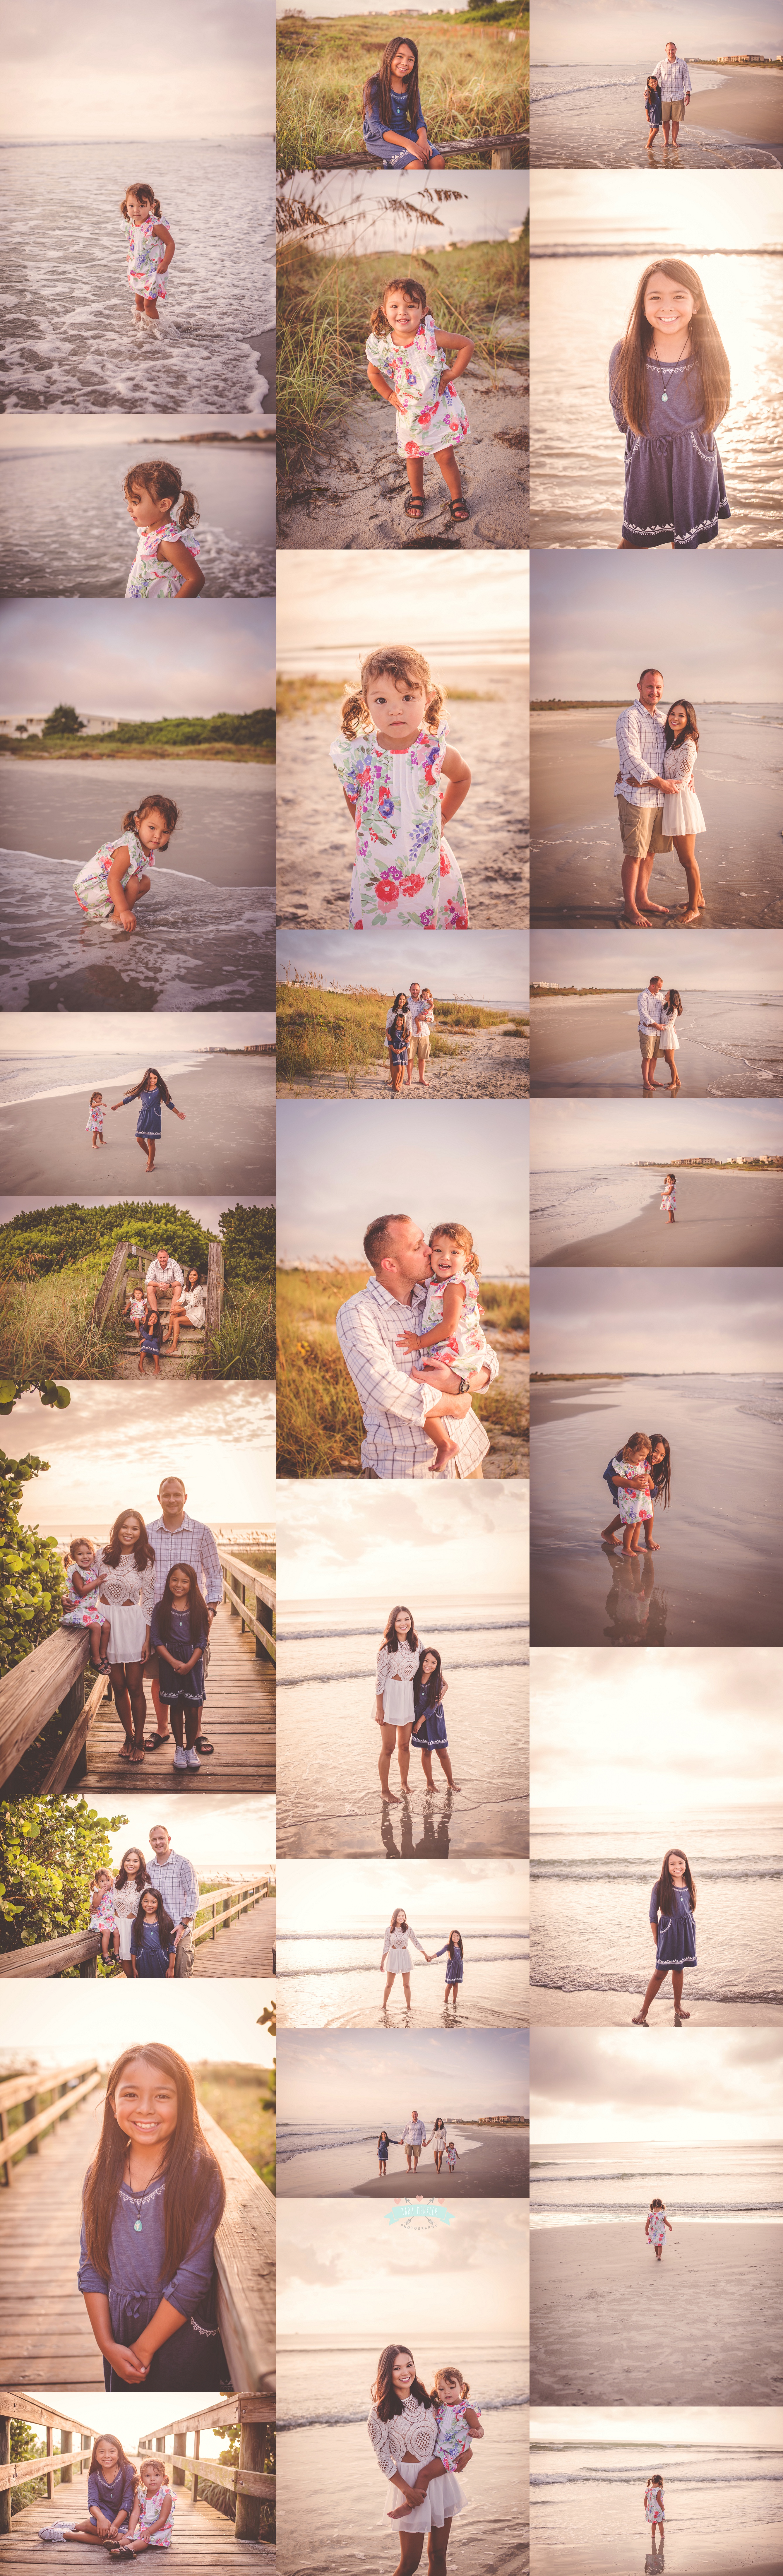 Webster Family Beach Session 2015 Tara Merkler Photography-138_WEB.jpg